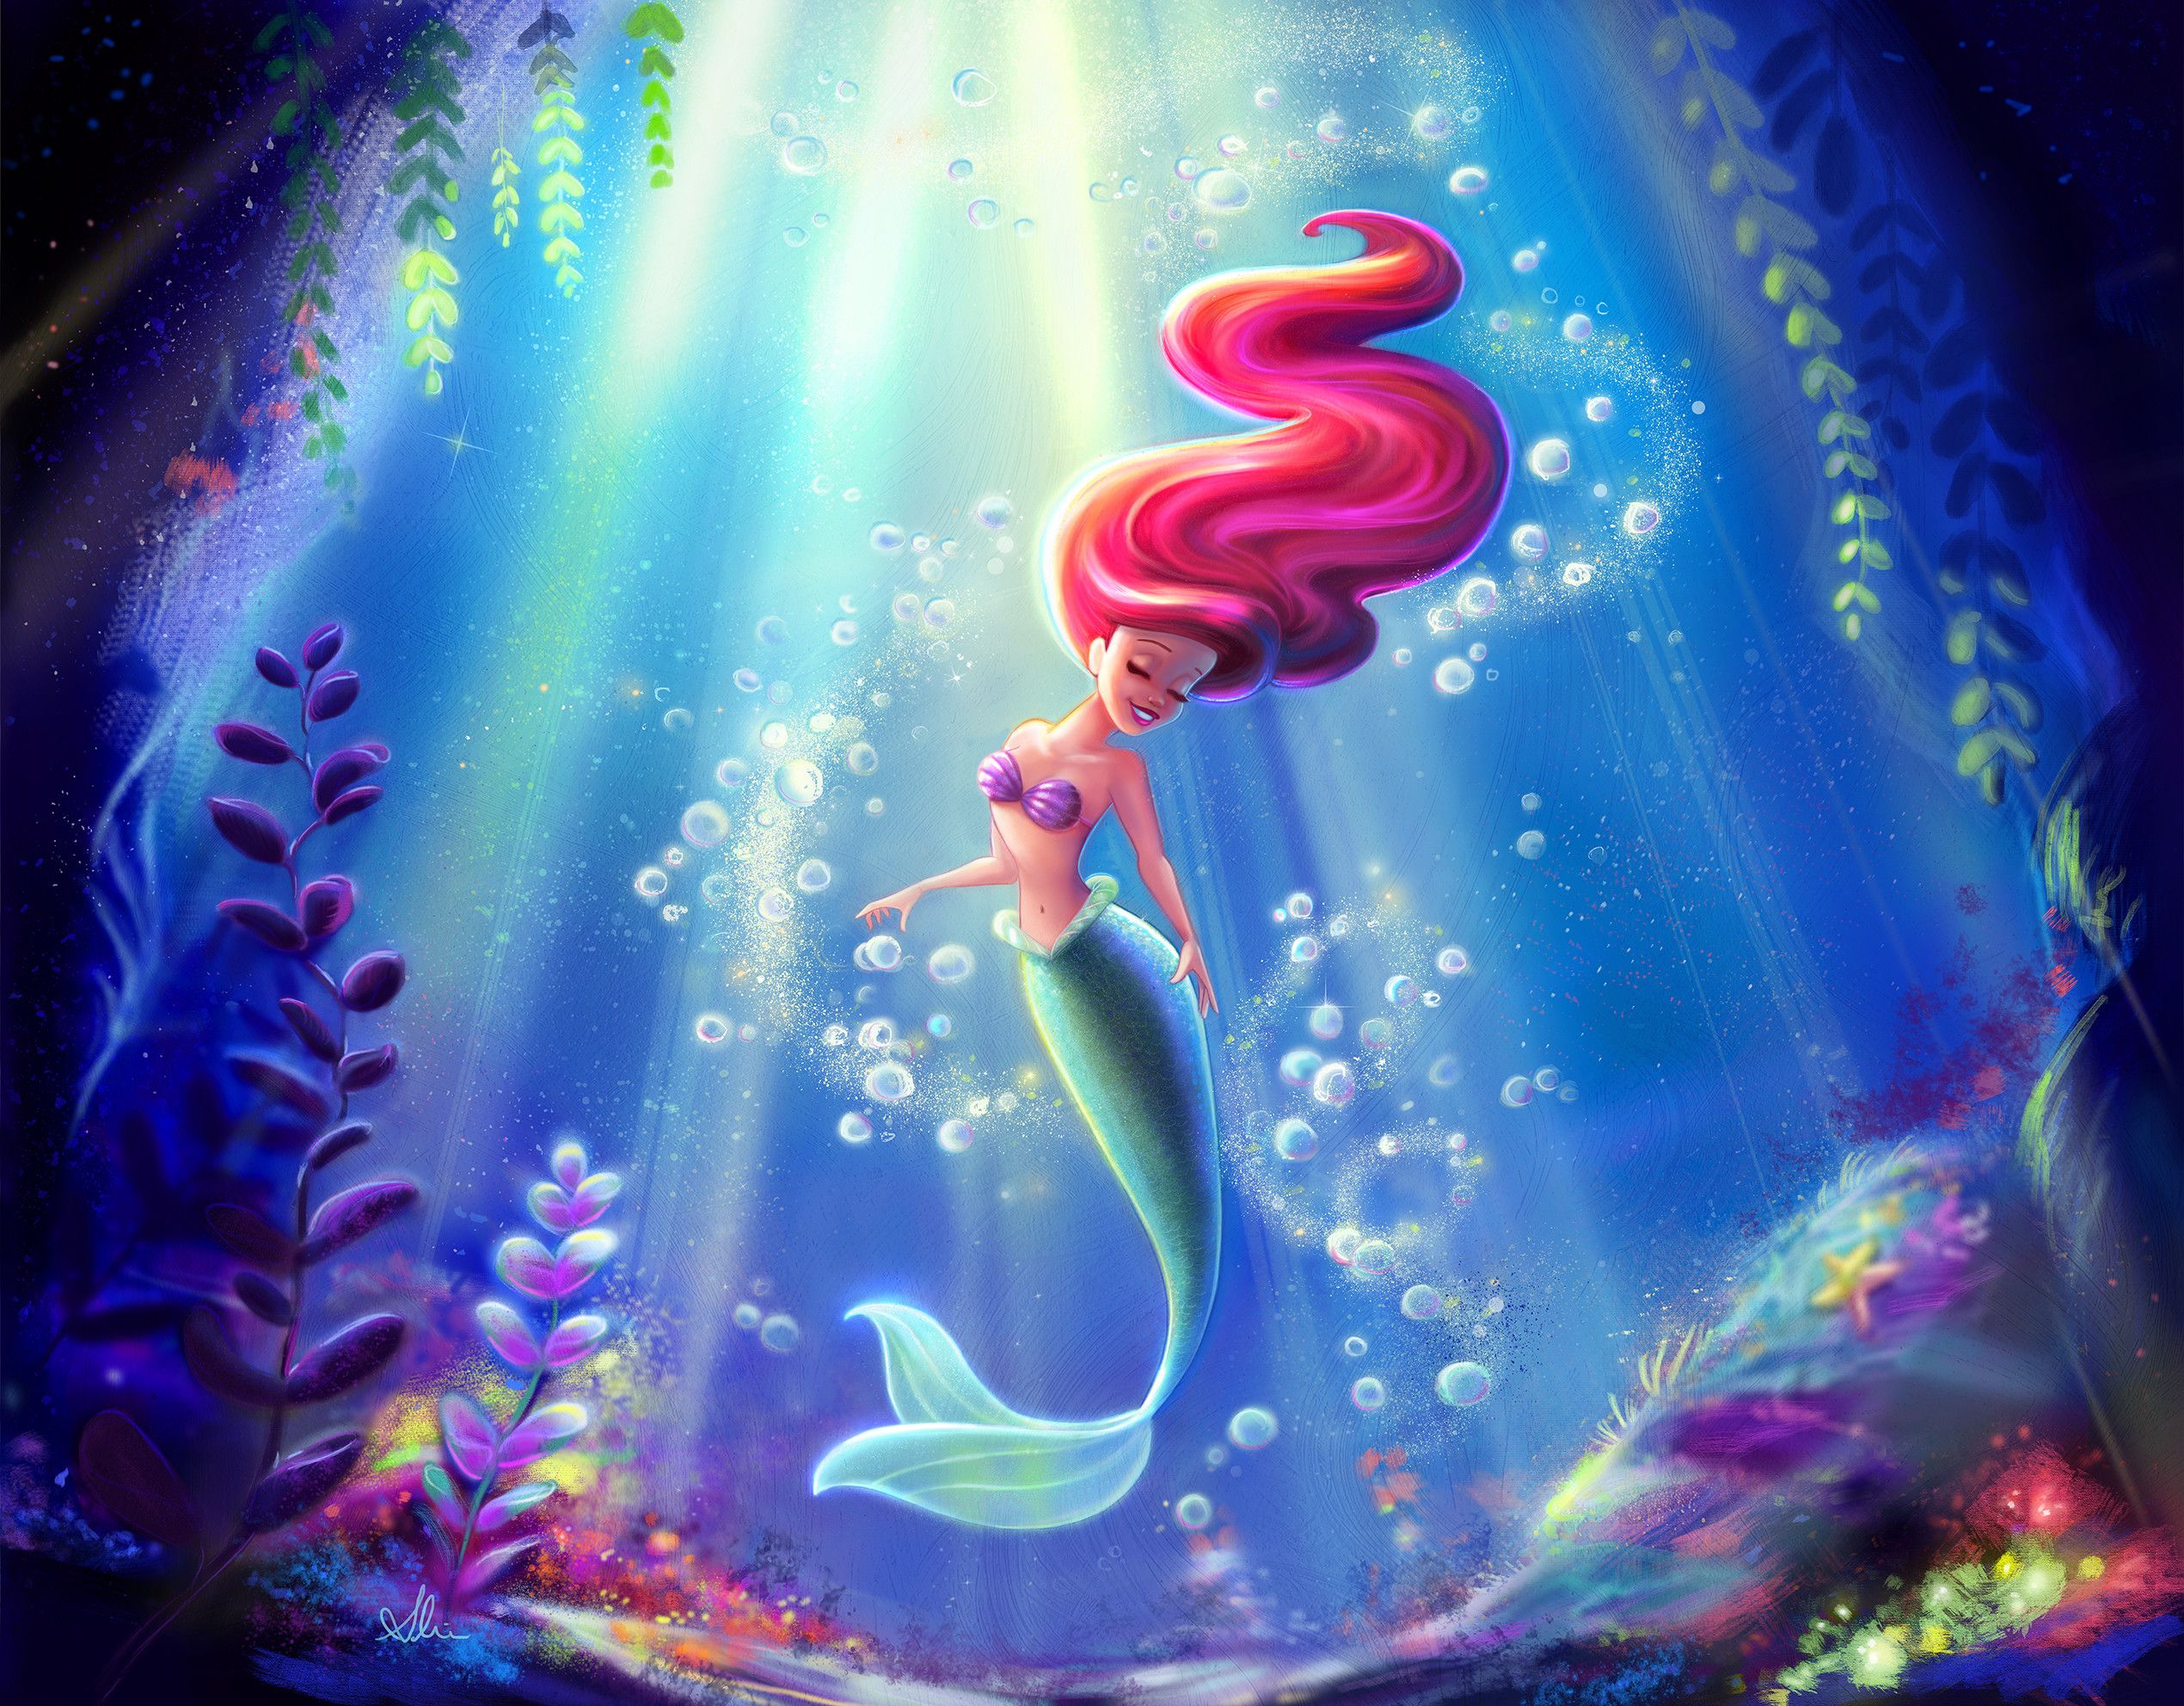 Disney Wallpaper Ariel The Little Mermaid